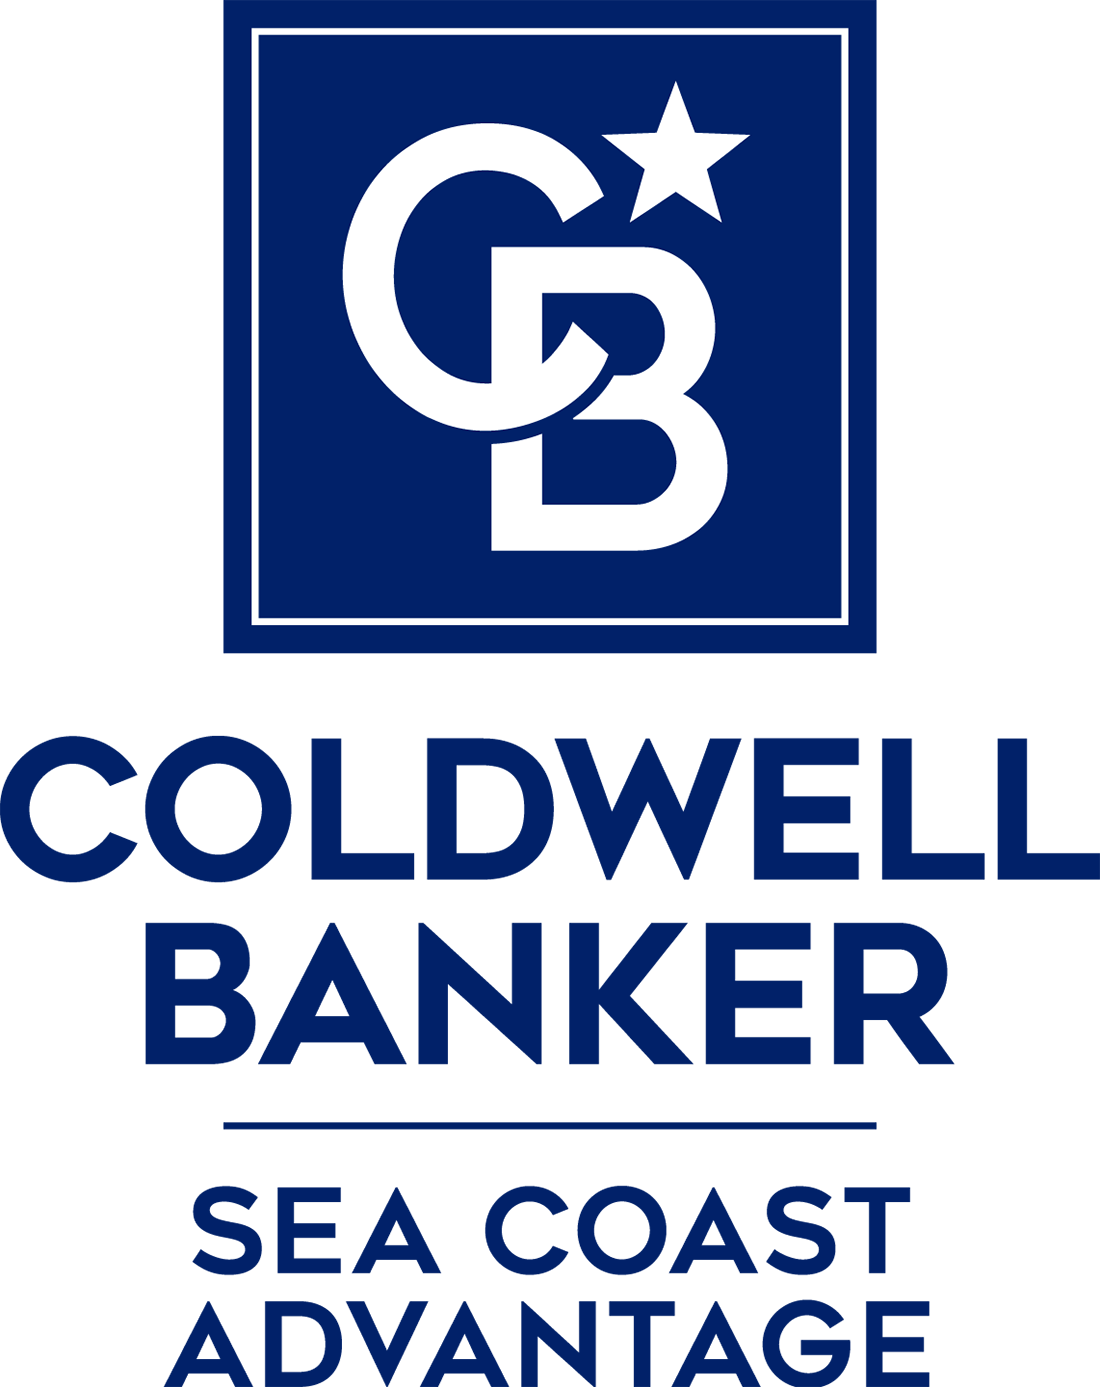 Greg Keen - Coldwell Banker Sea Coast Advantage Realty Logo